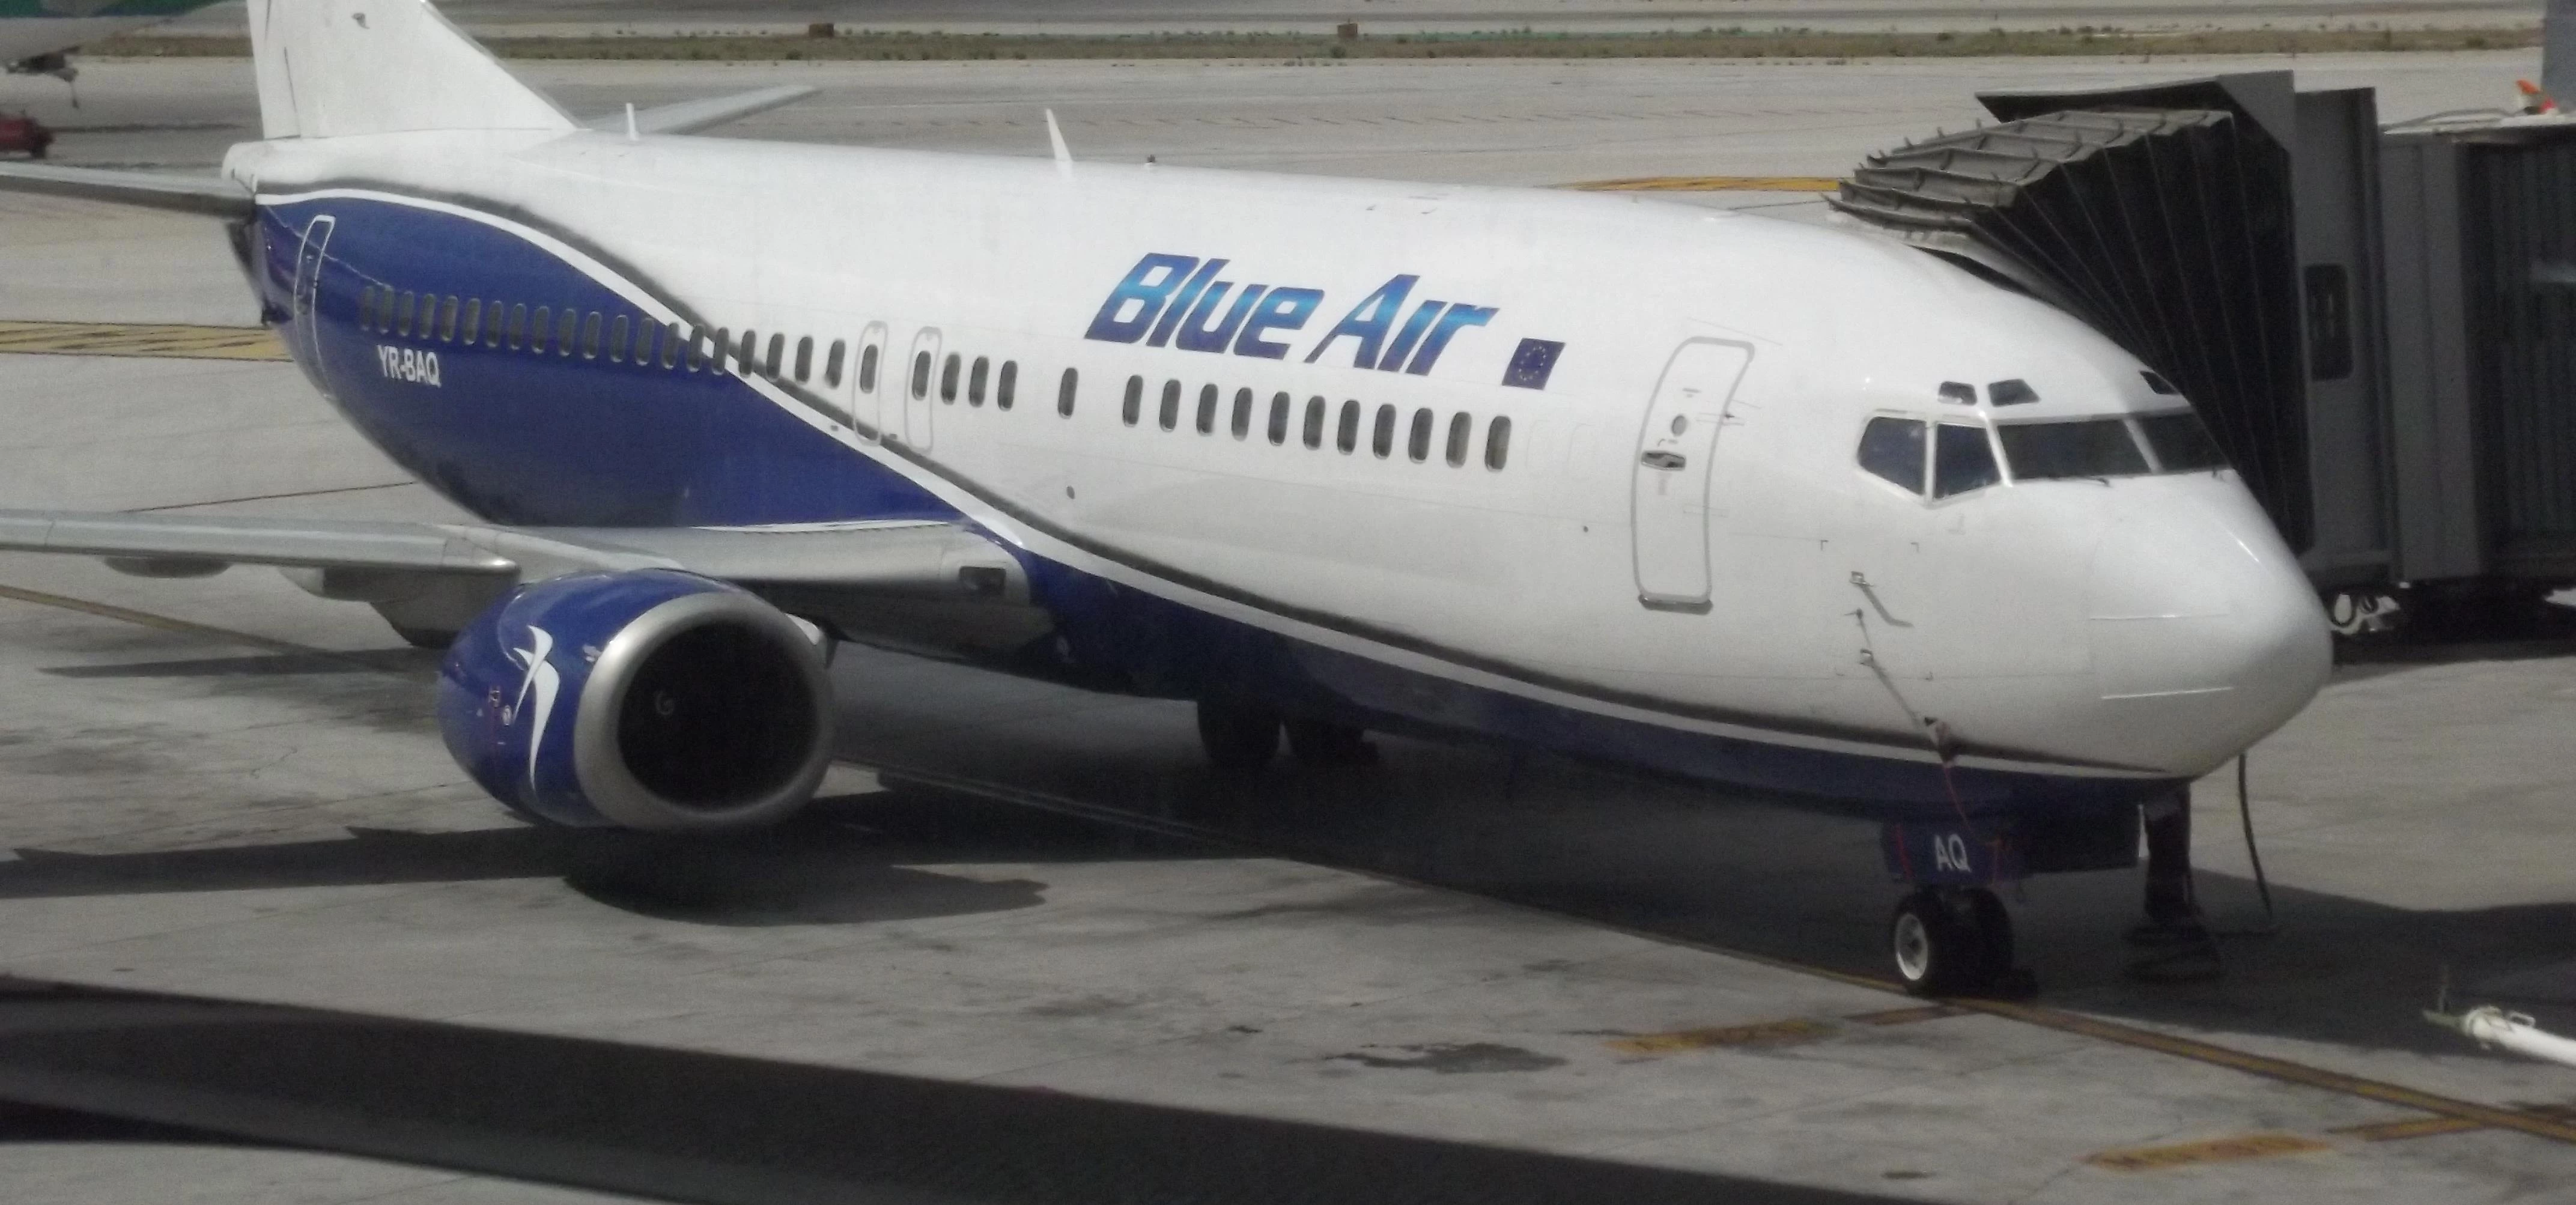 Malaga Airport - Terminal 3 - planes - Blue Air